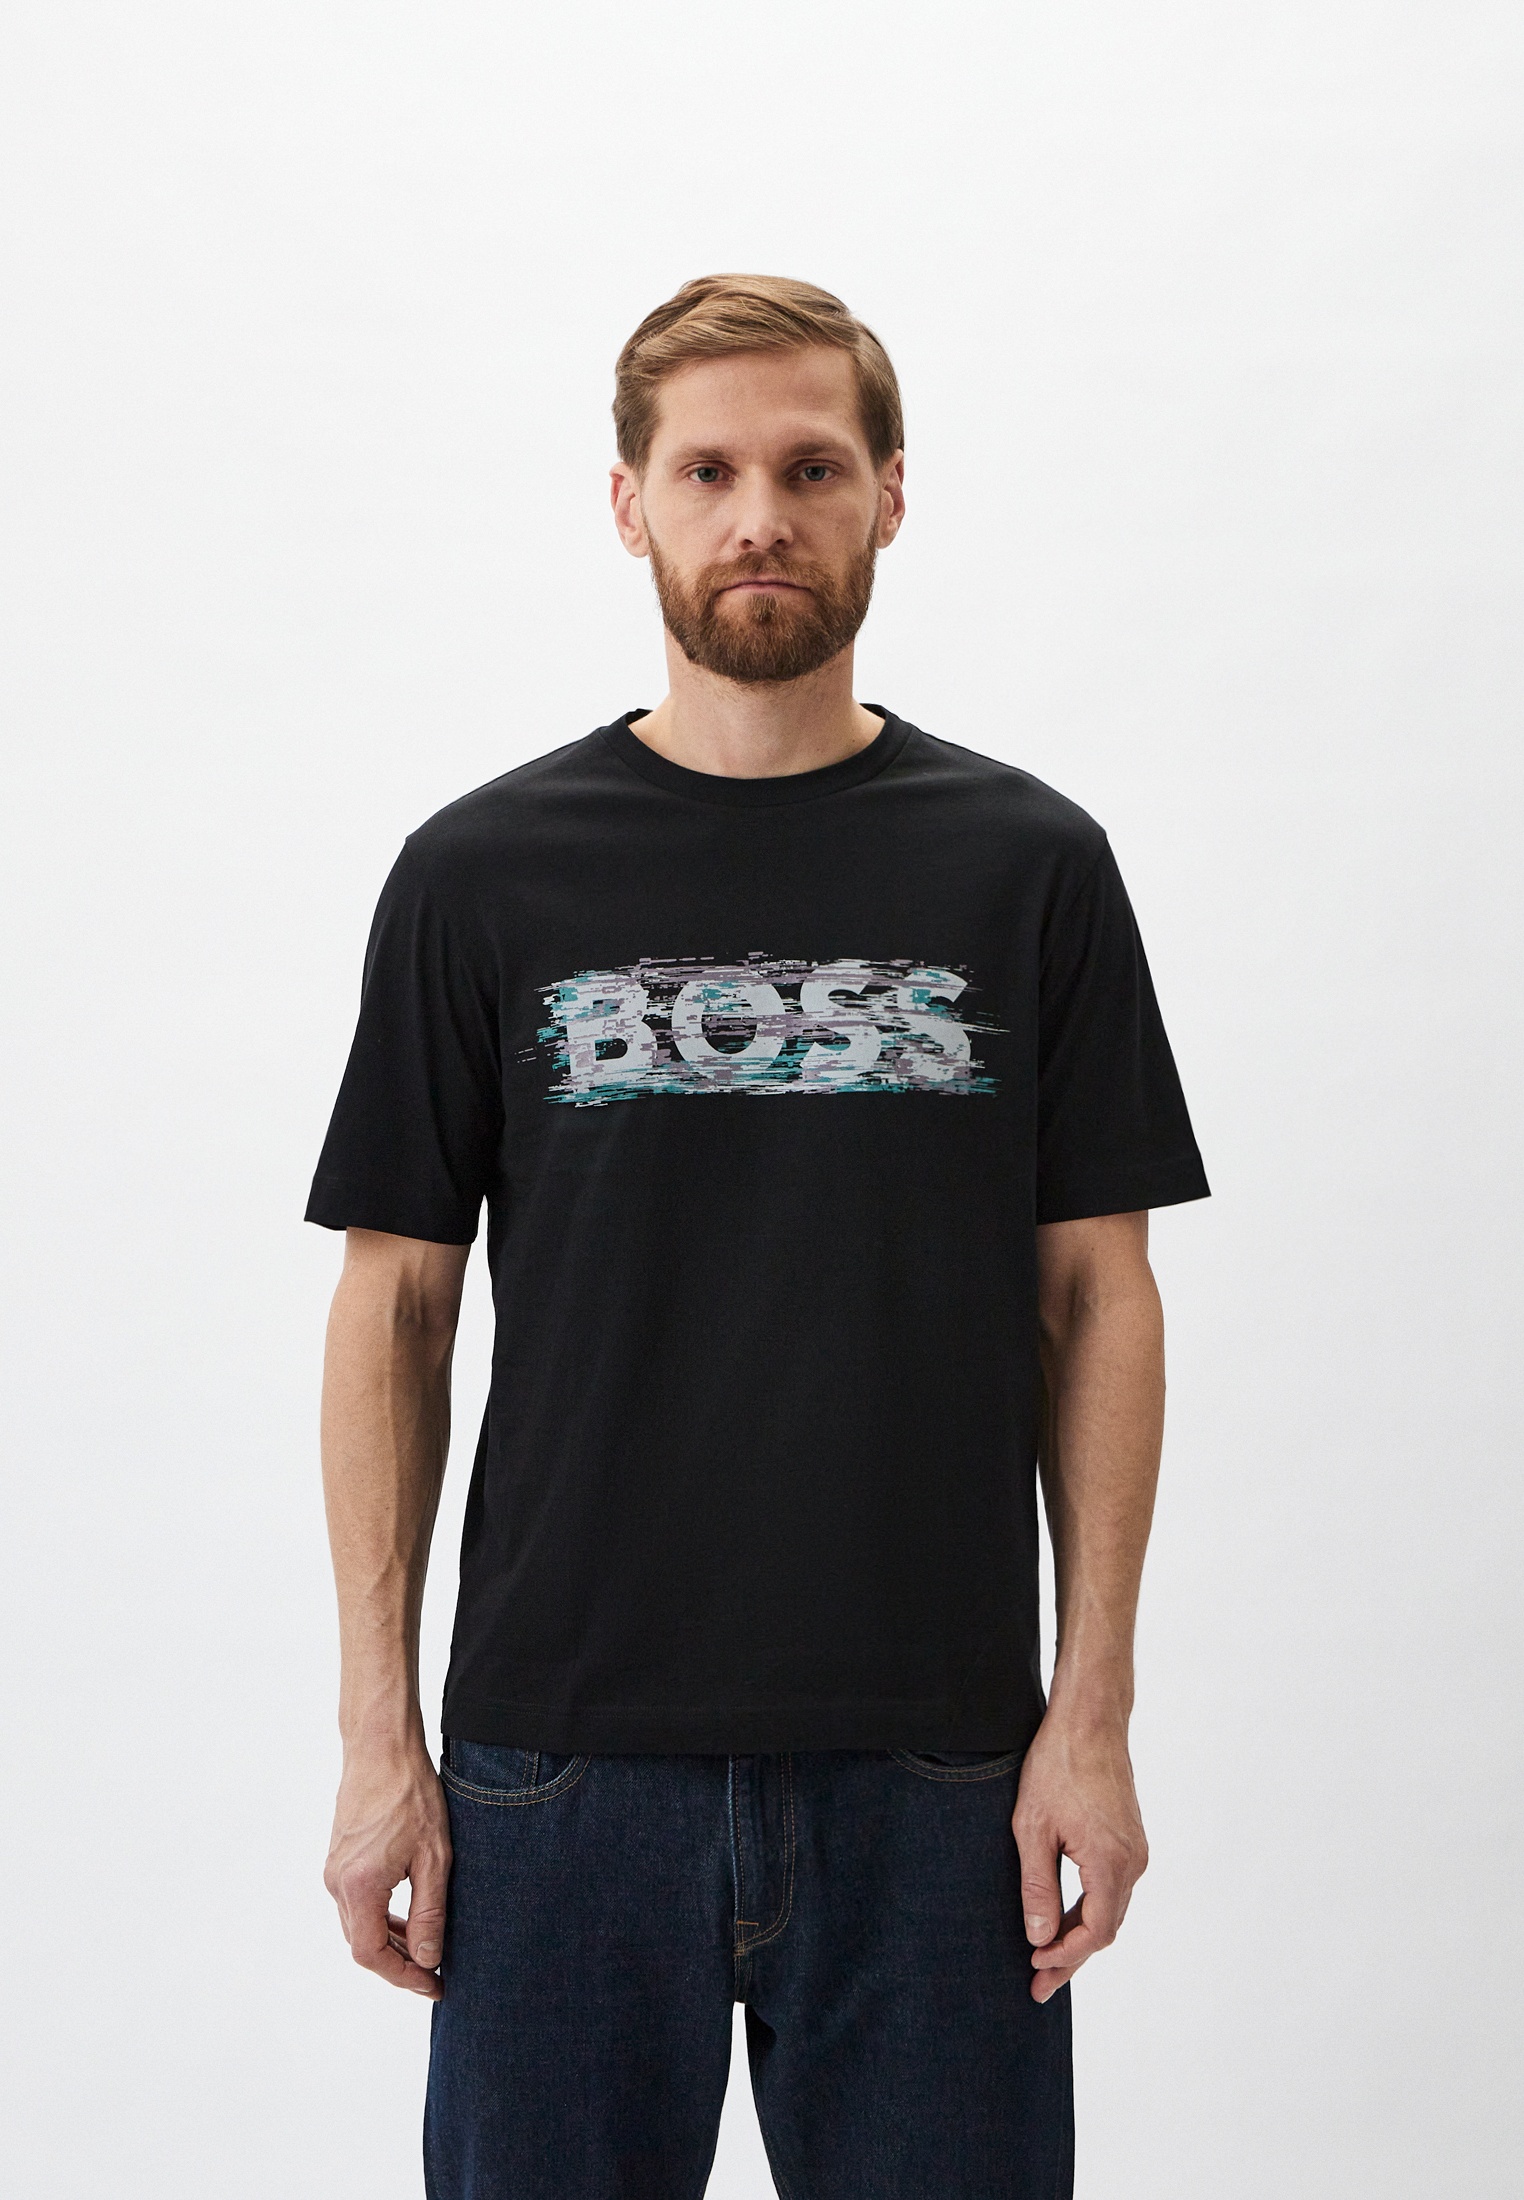 Мужская футболка Boss (Босс) 50503542: изображение 1